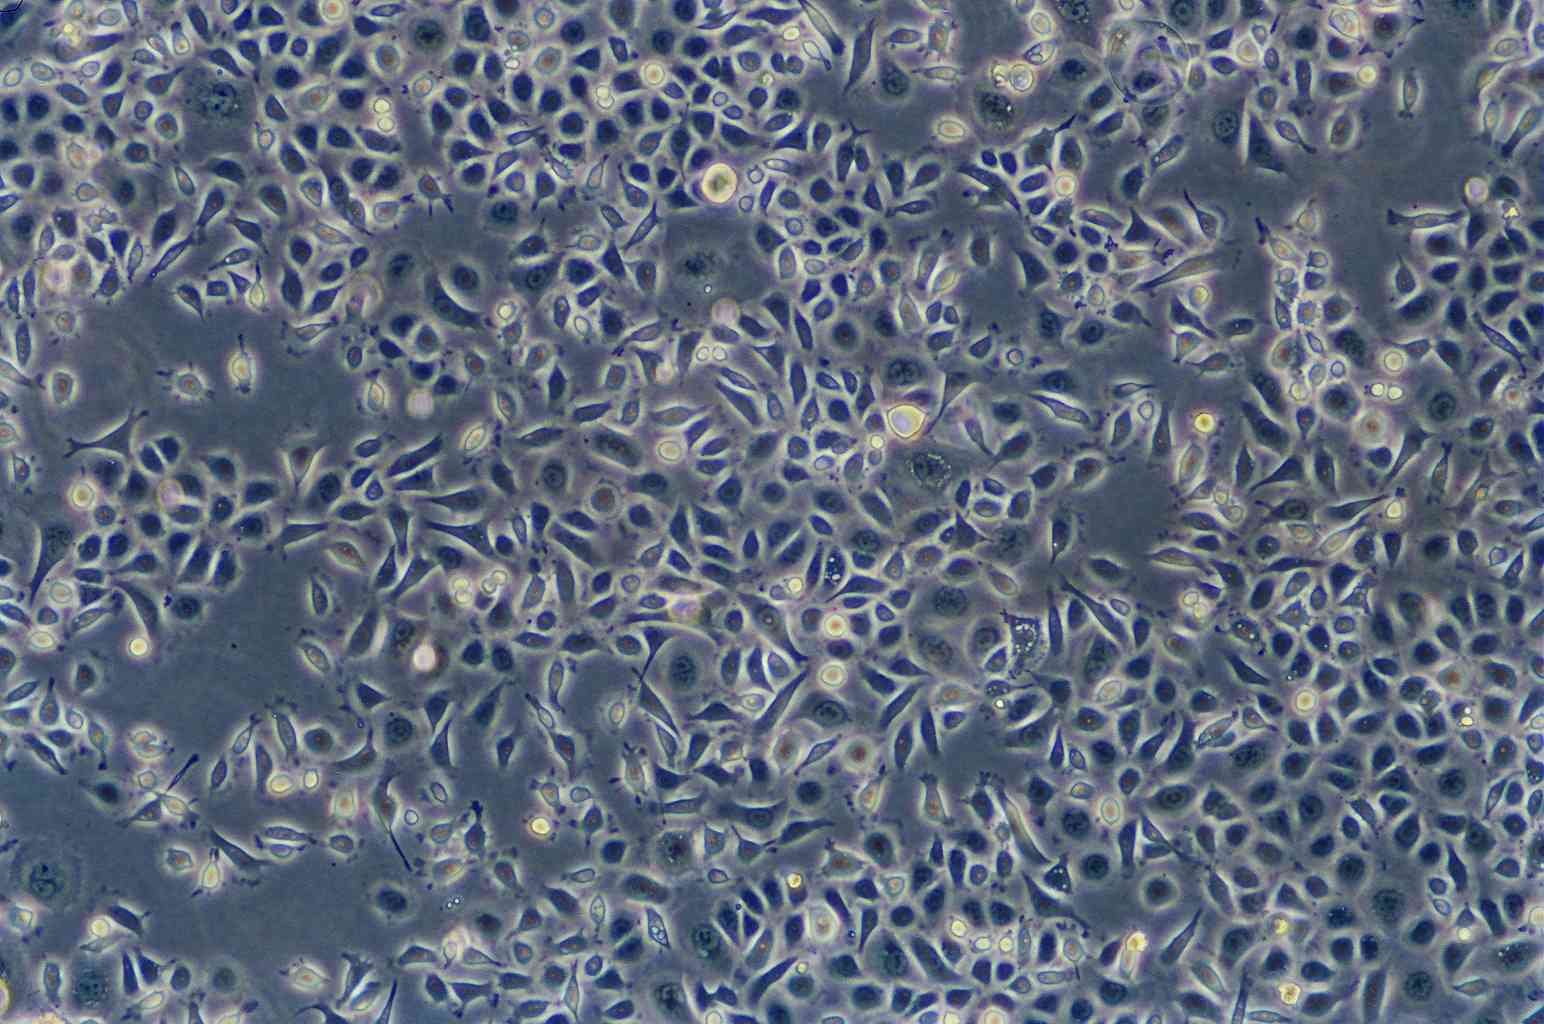 Ca761 epithelioid cells小鼠乳腺癌细胞系